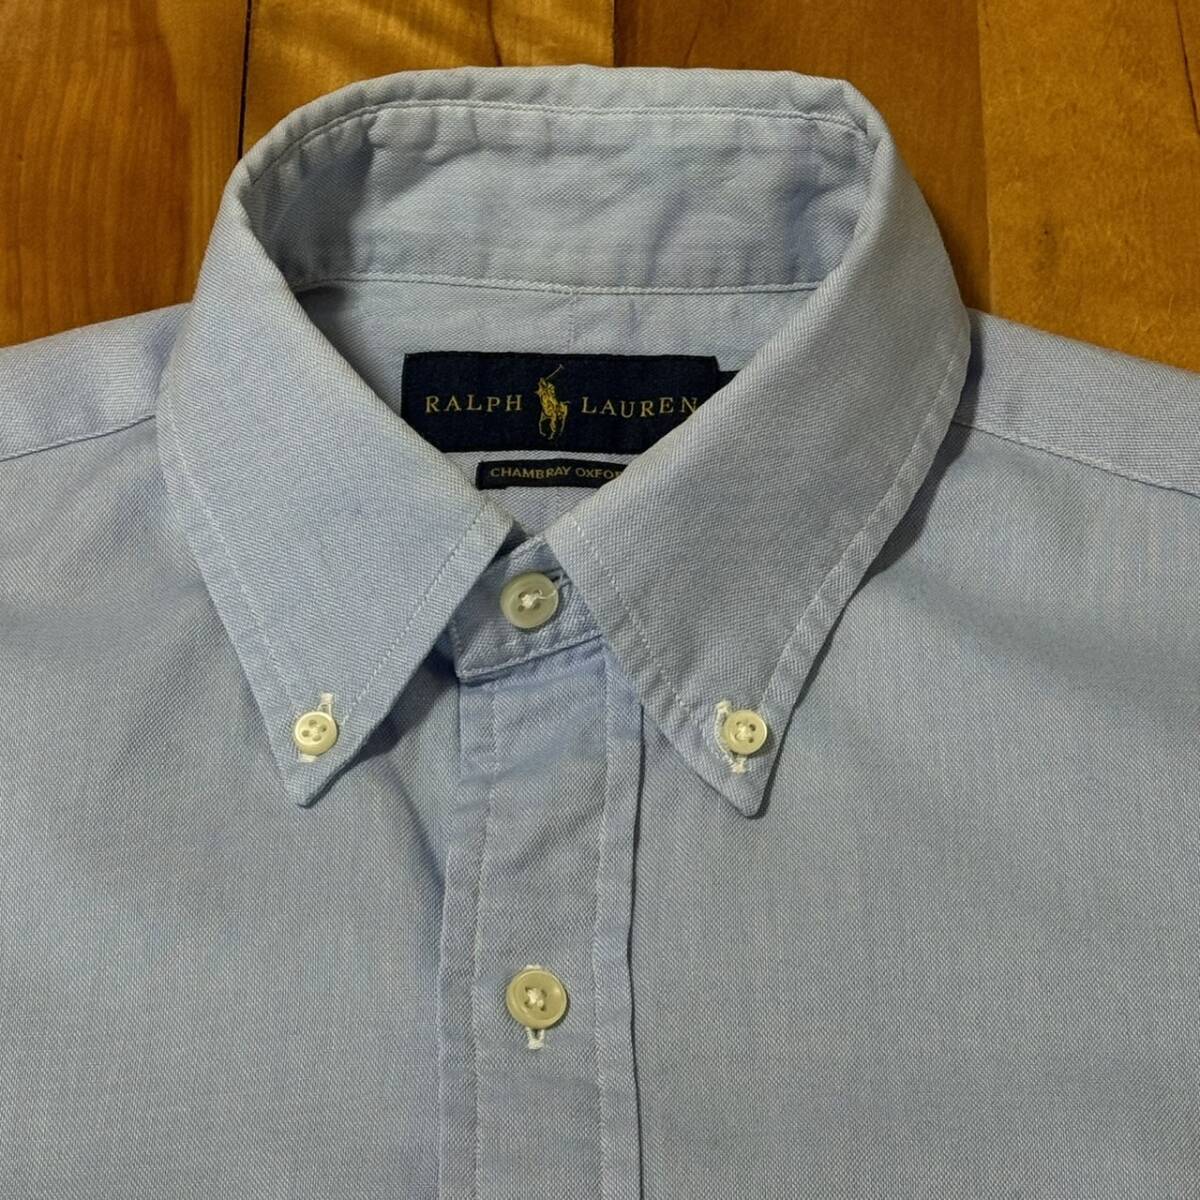  Ralph Lauren короткий рукав оскфорд рубашка синий S BD рубашка po колено вышивка 